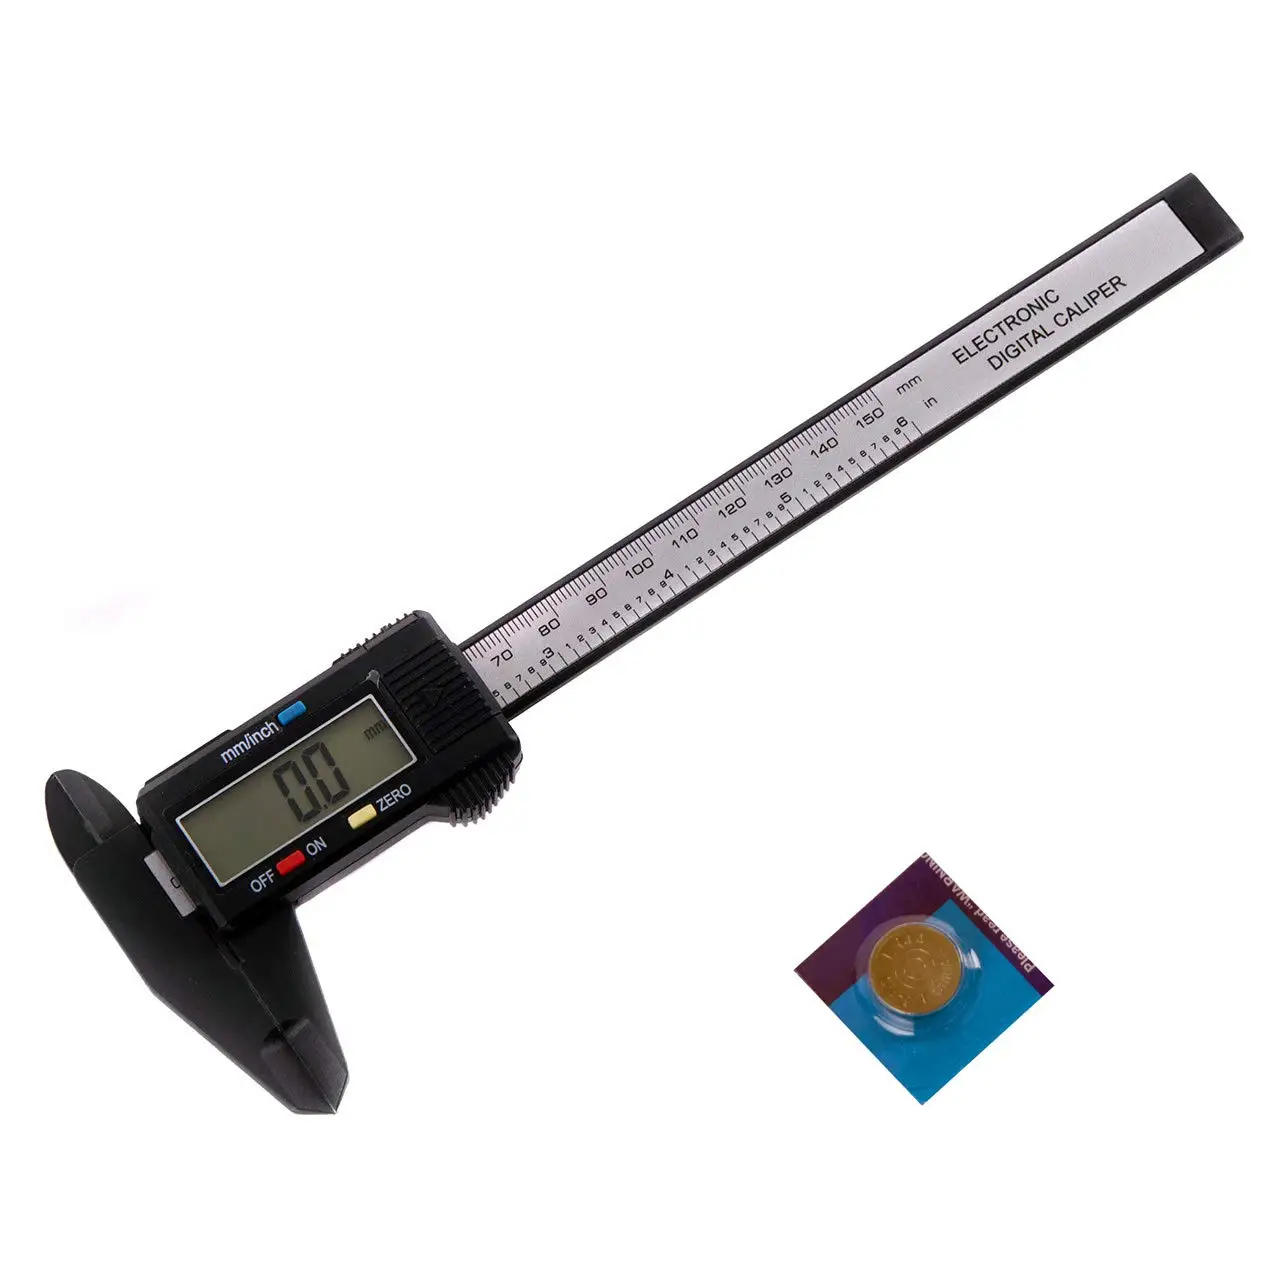 Digital Caliper Measuring Tool Large LCD Screen 0-6Inch/150mm Carbon Fiber Gauge 